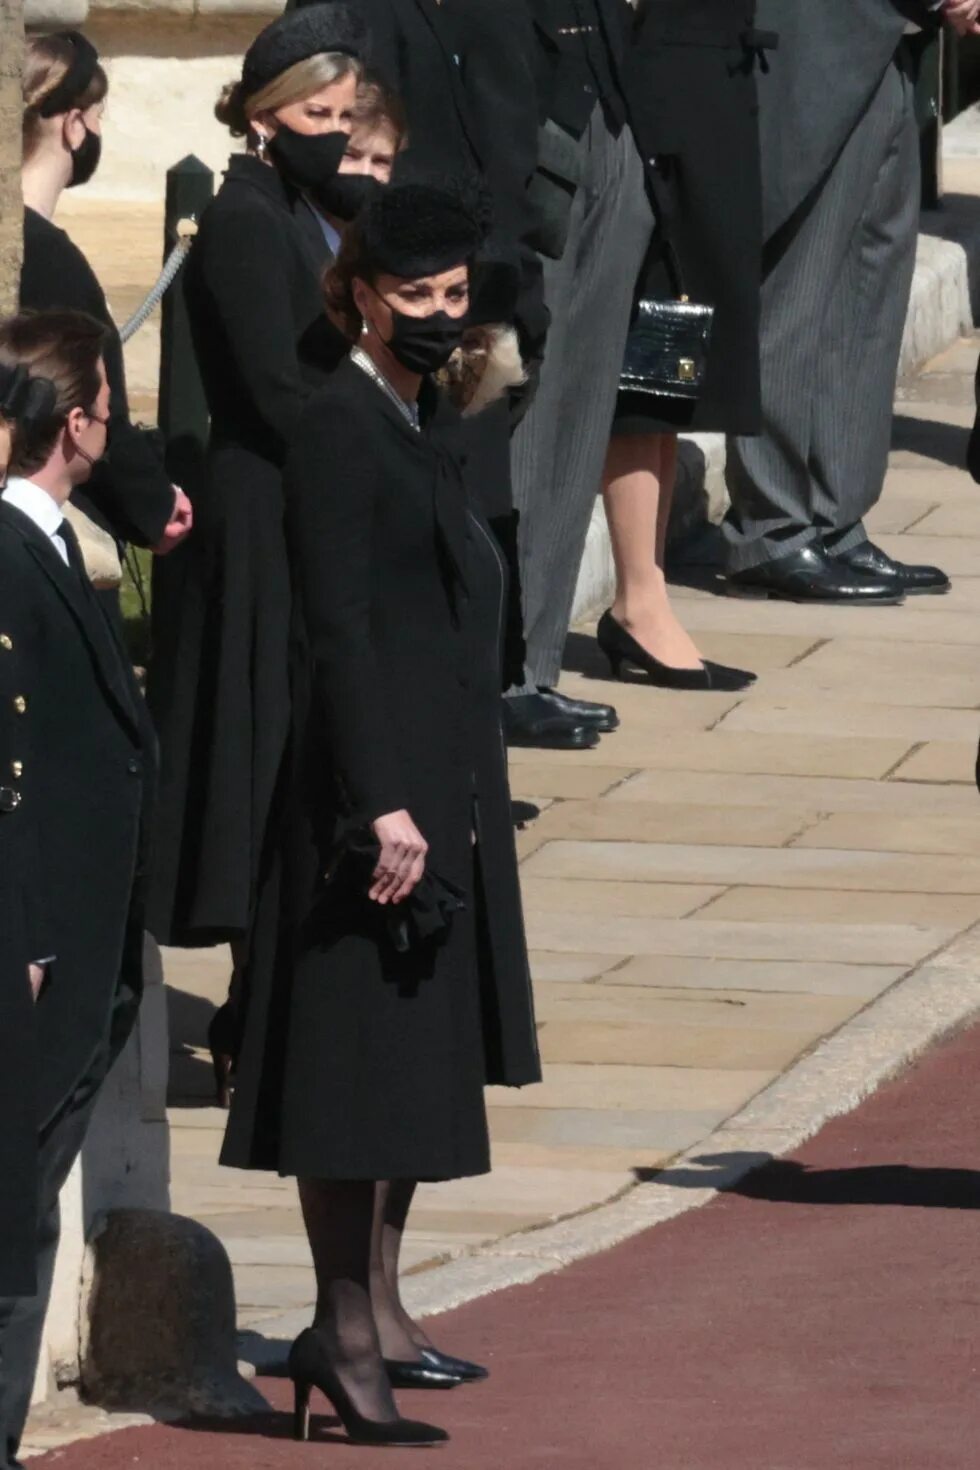 Kate Middleton на похоронах Филиппа. Кейт Миддлтон на похоронах Филиппа пальто. Кэтрин Кембриджская на похоронах принца Филиппа. Герцогиня Кэтрин на похоронах. Кейт миддлтон жива или умерла